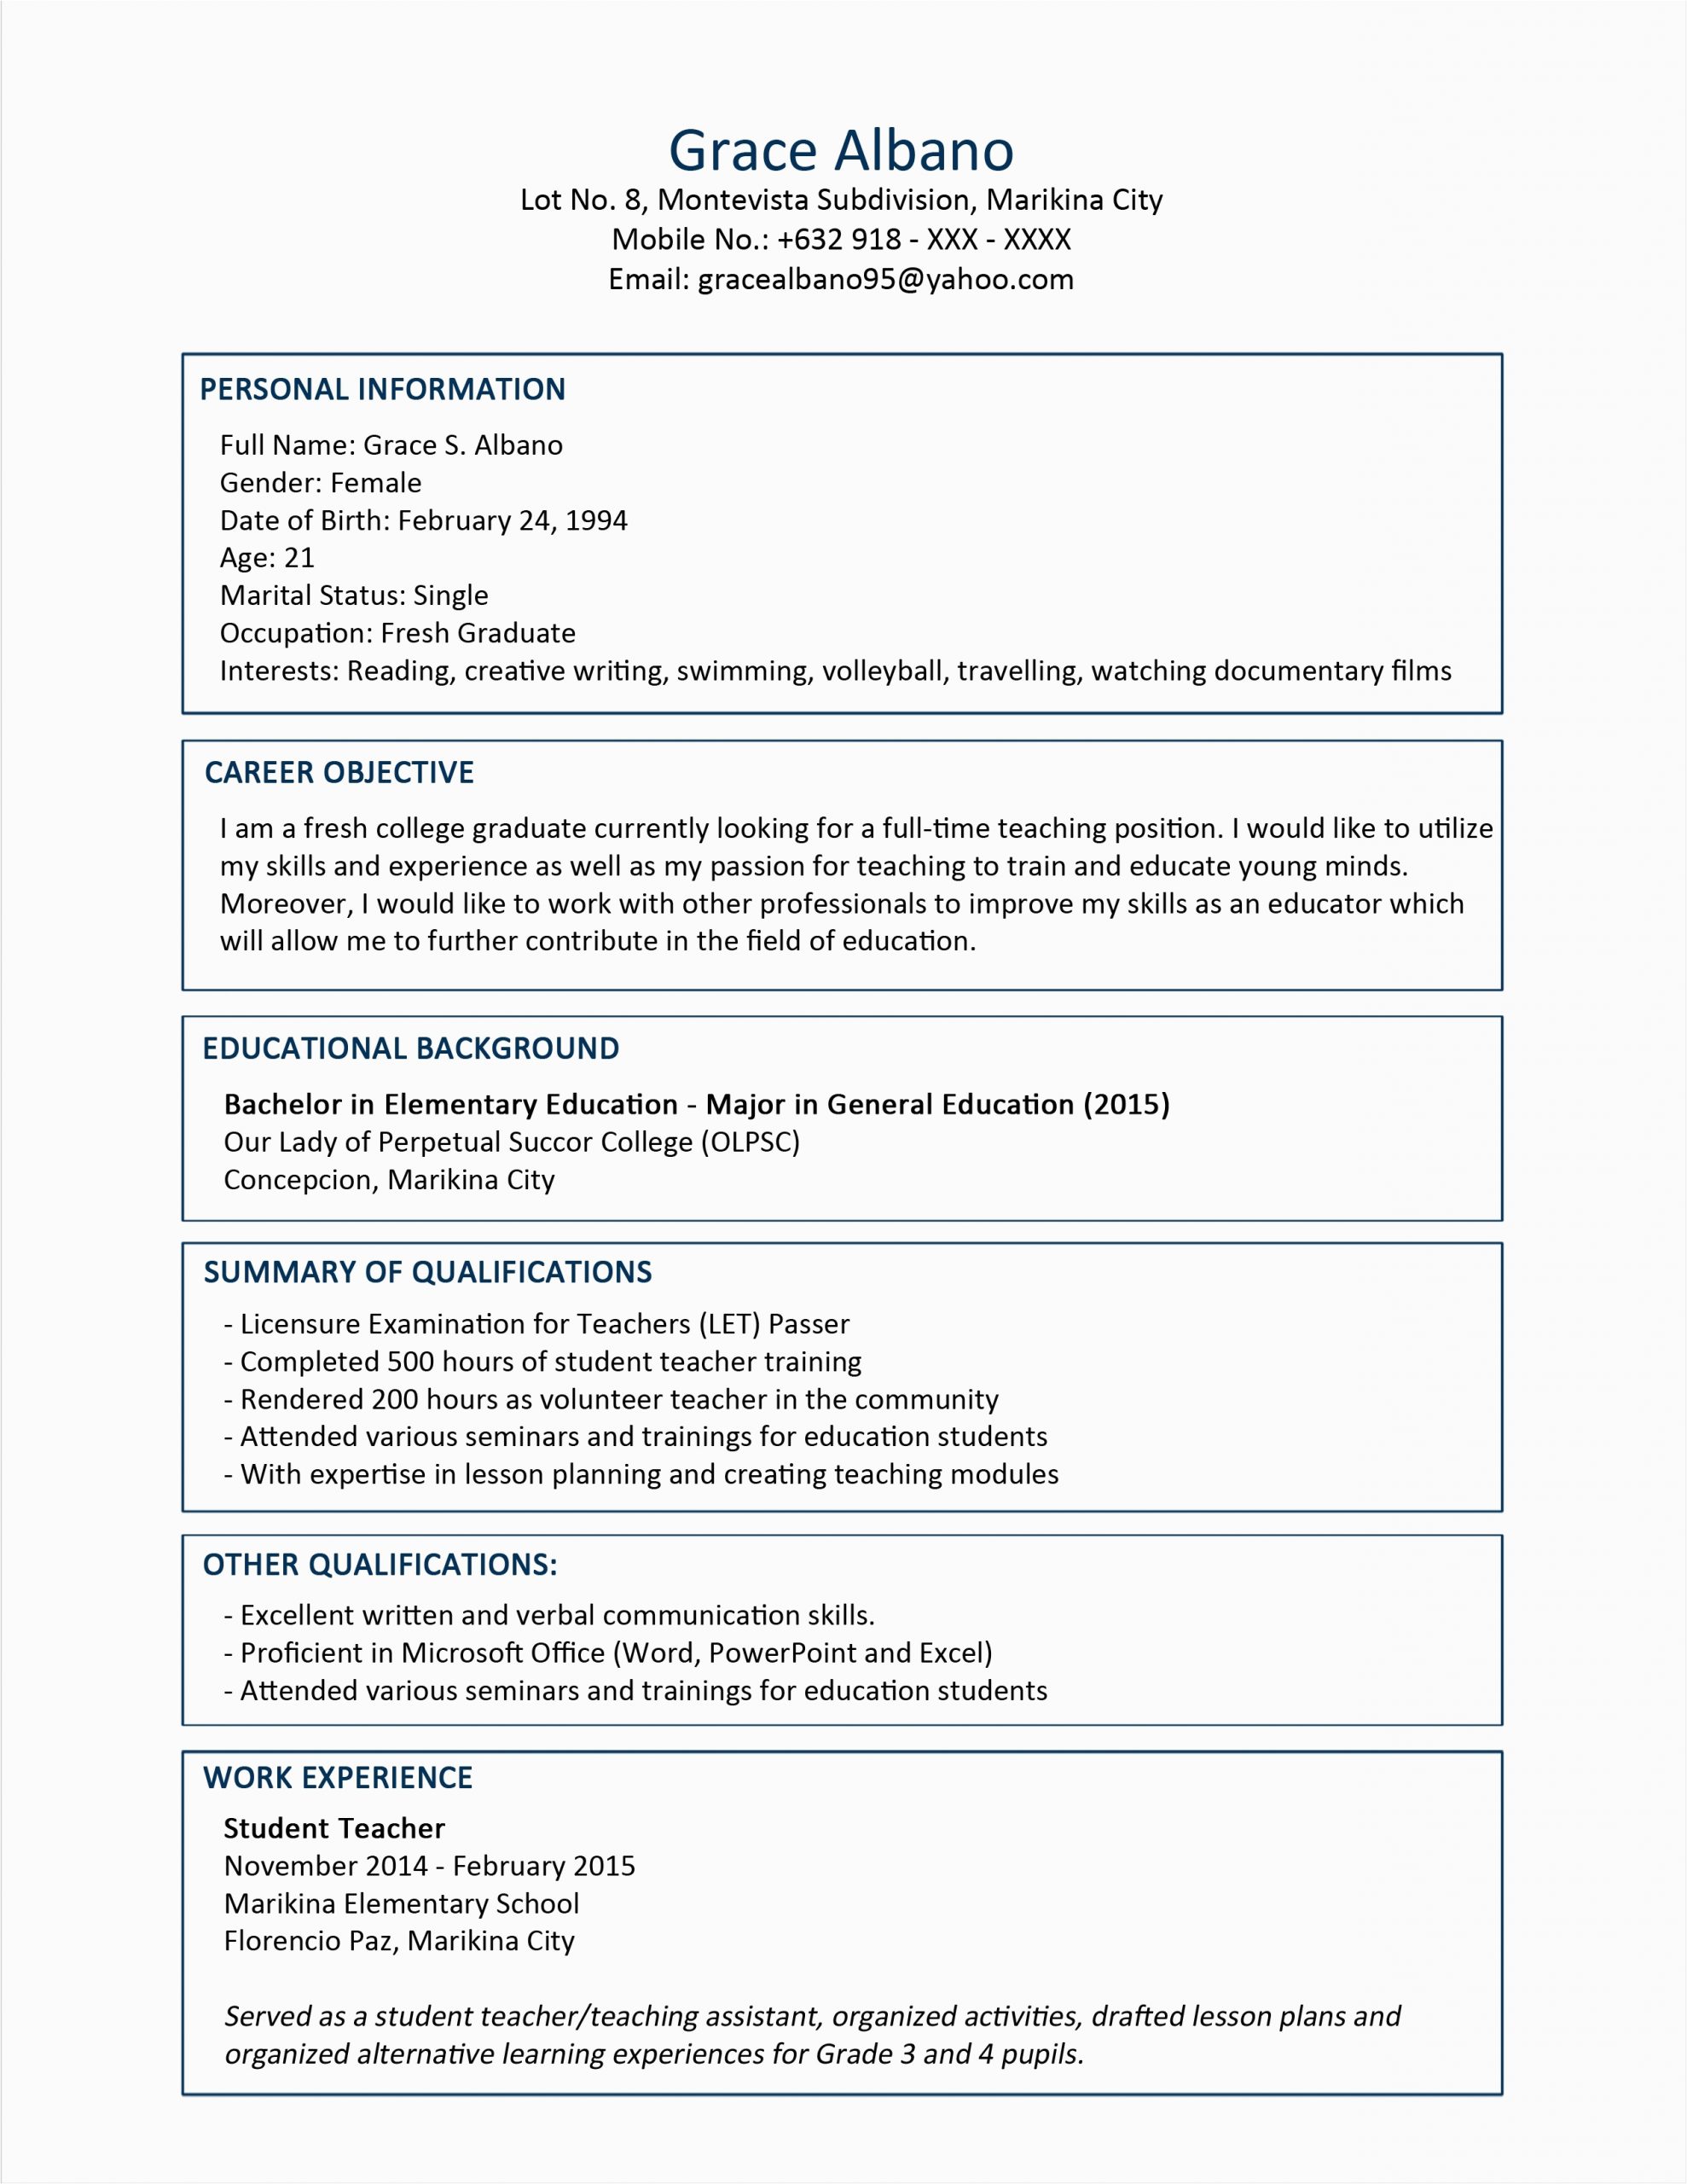 Sample Resume for Medical Technologist Fresh Graduate Resume Sample for Fresh Graduate Information Technology